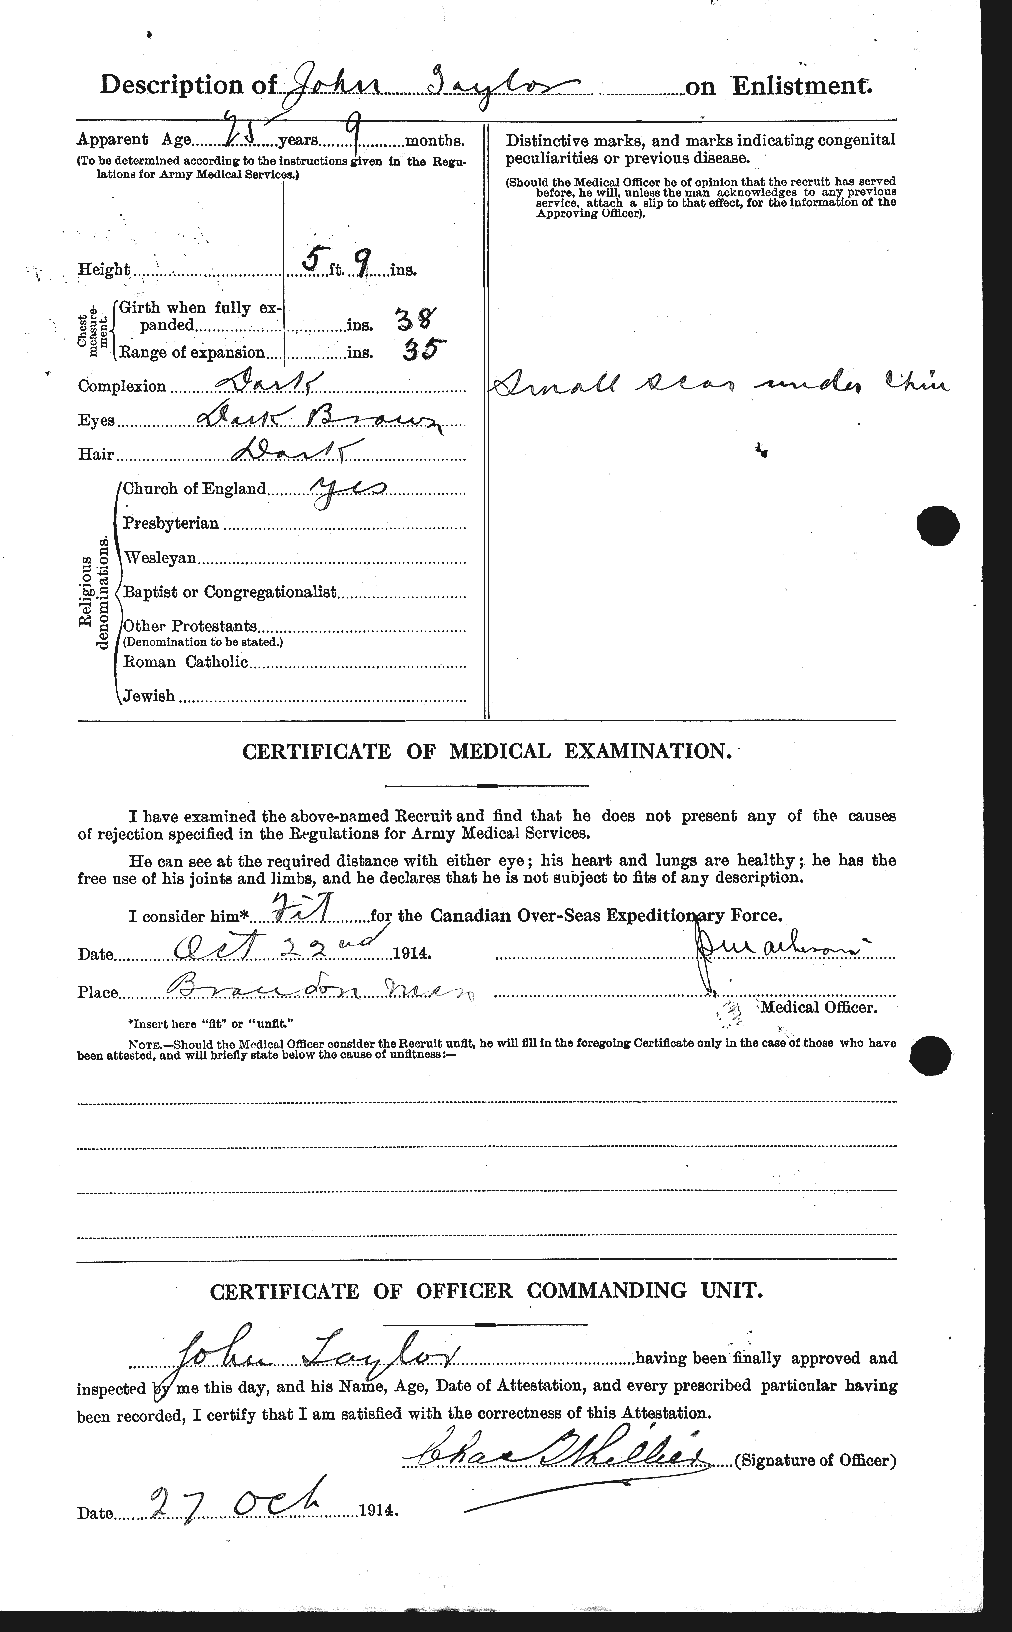 Dossiers du Personnel de la Première Guerre mondiale - CEC 626979b